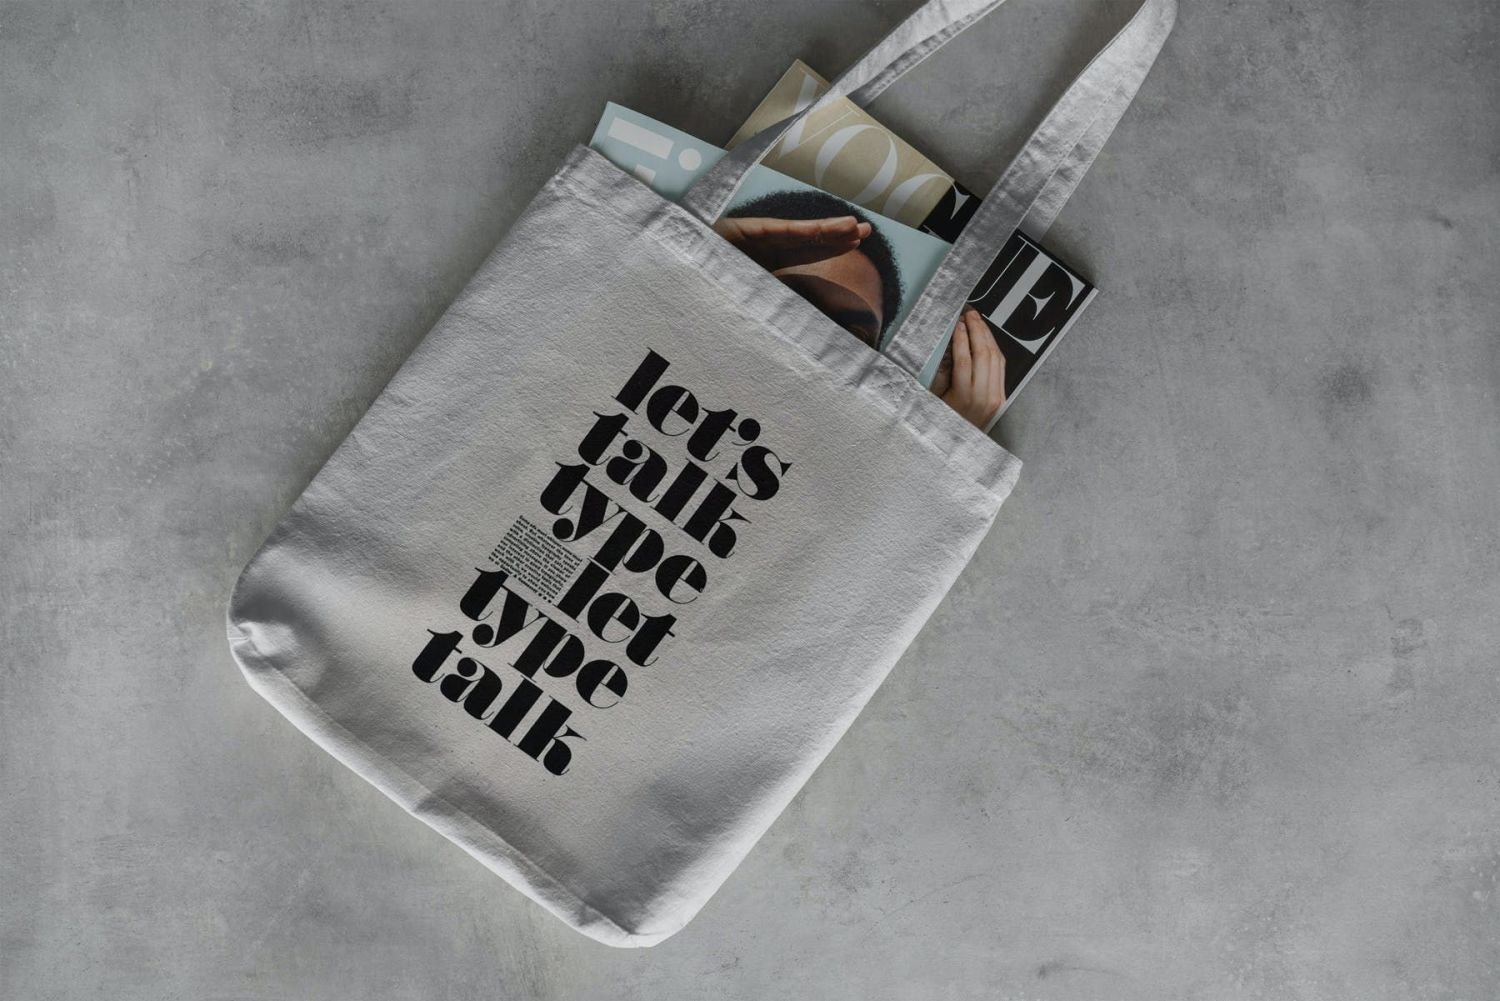 帆布手提包样机生活方式 Canvas Tote Bag Mock-Up Lifestyle插图11